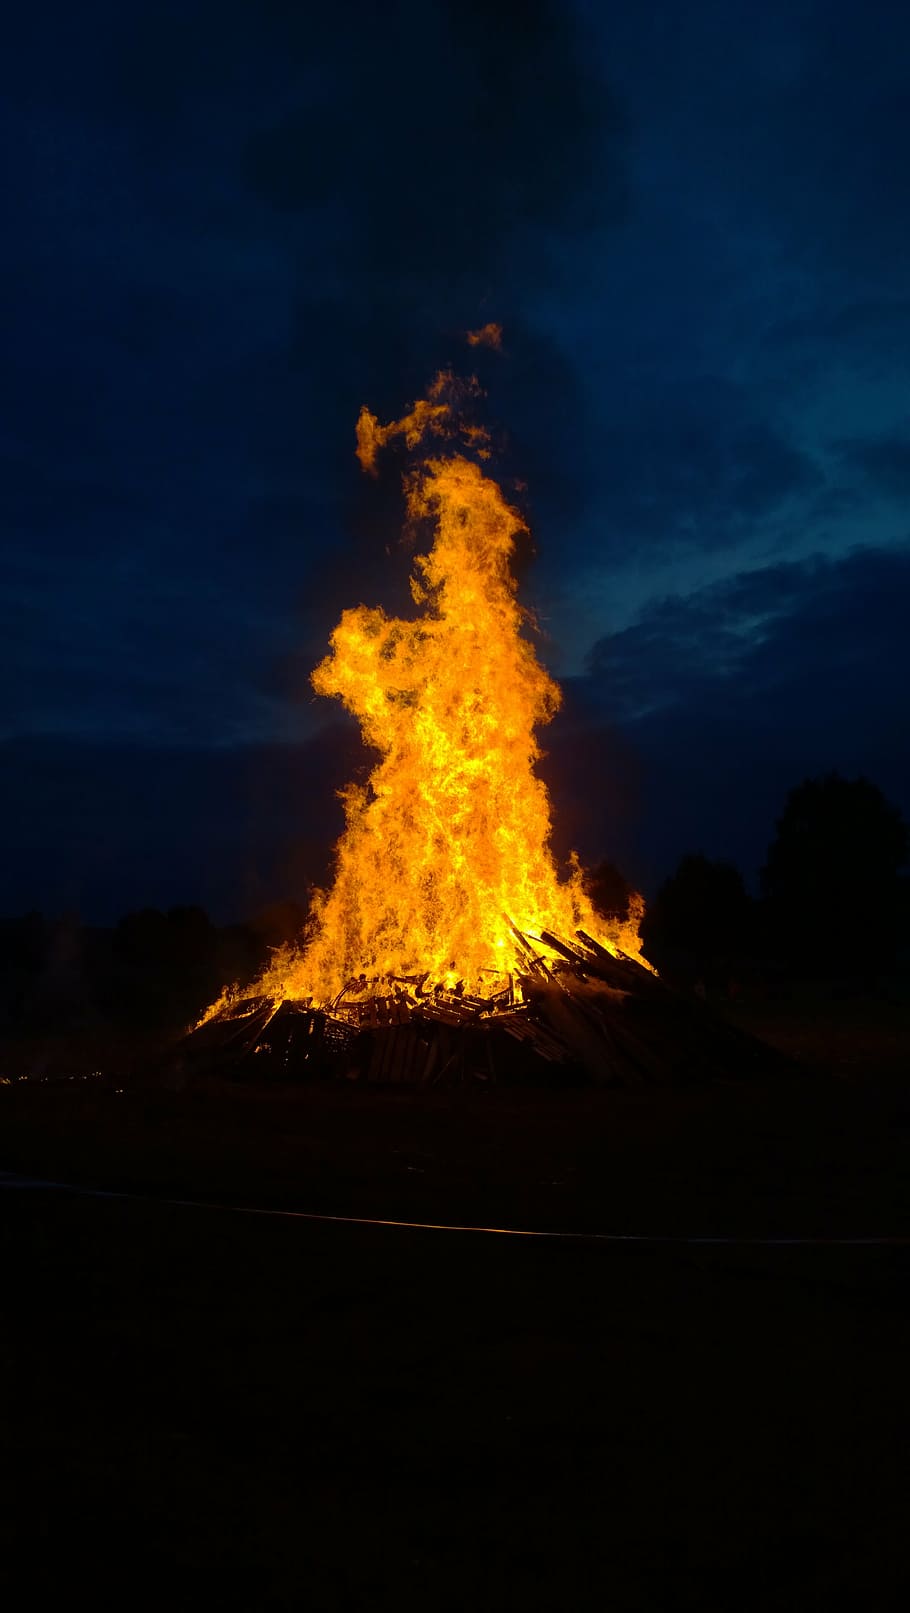 fuego, pleno verano, llama, madera, oscuro, noche, solsticio, caliente, resplandor, humo